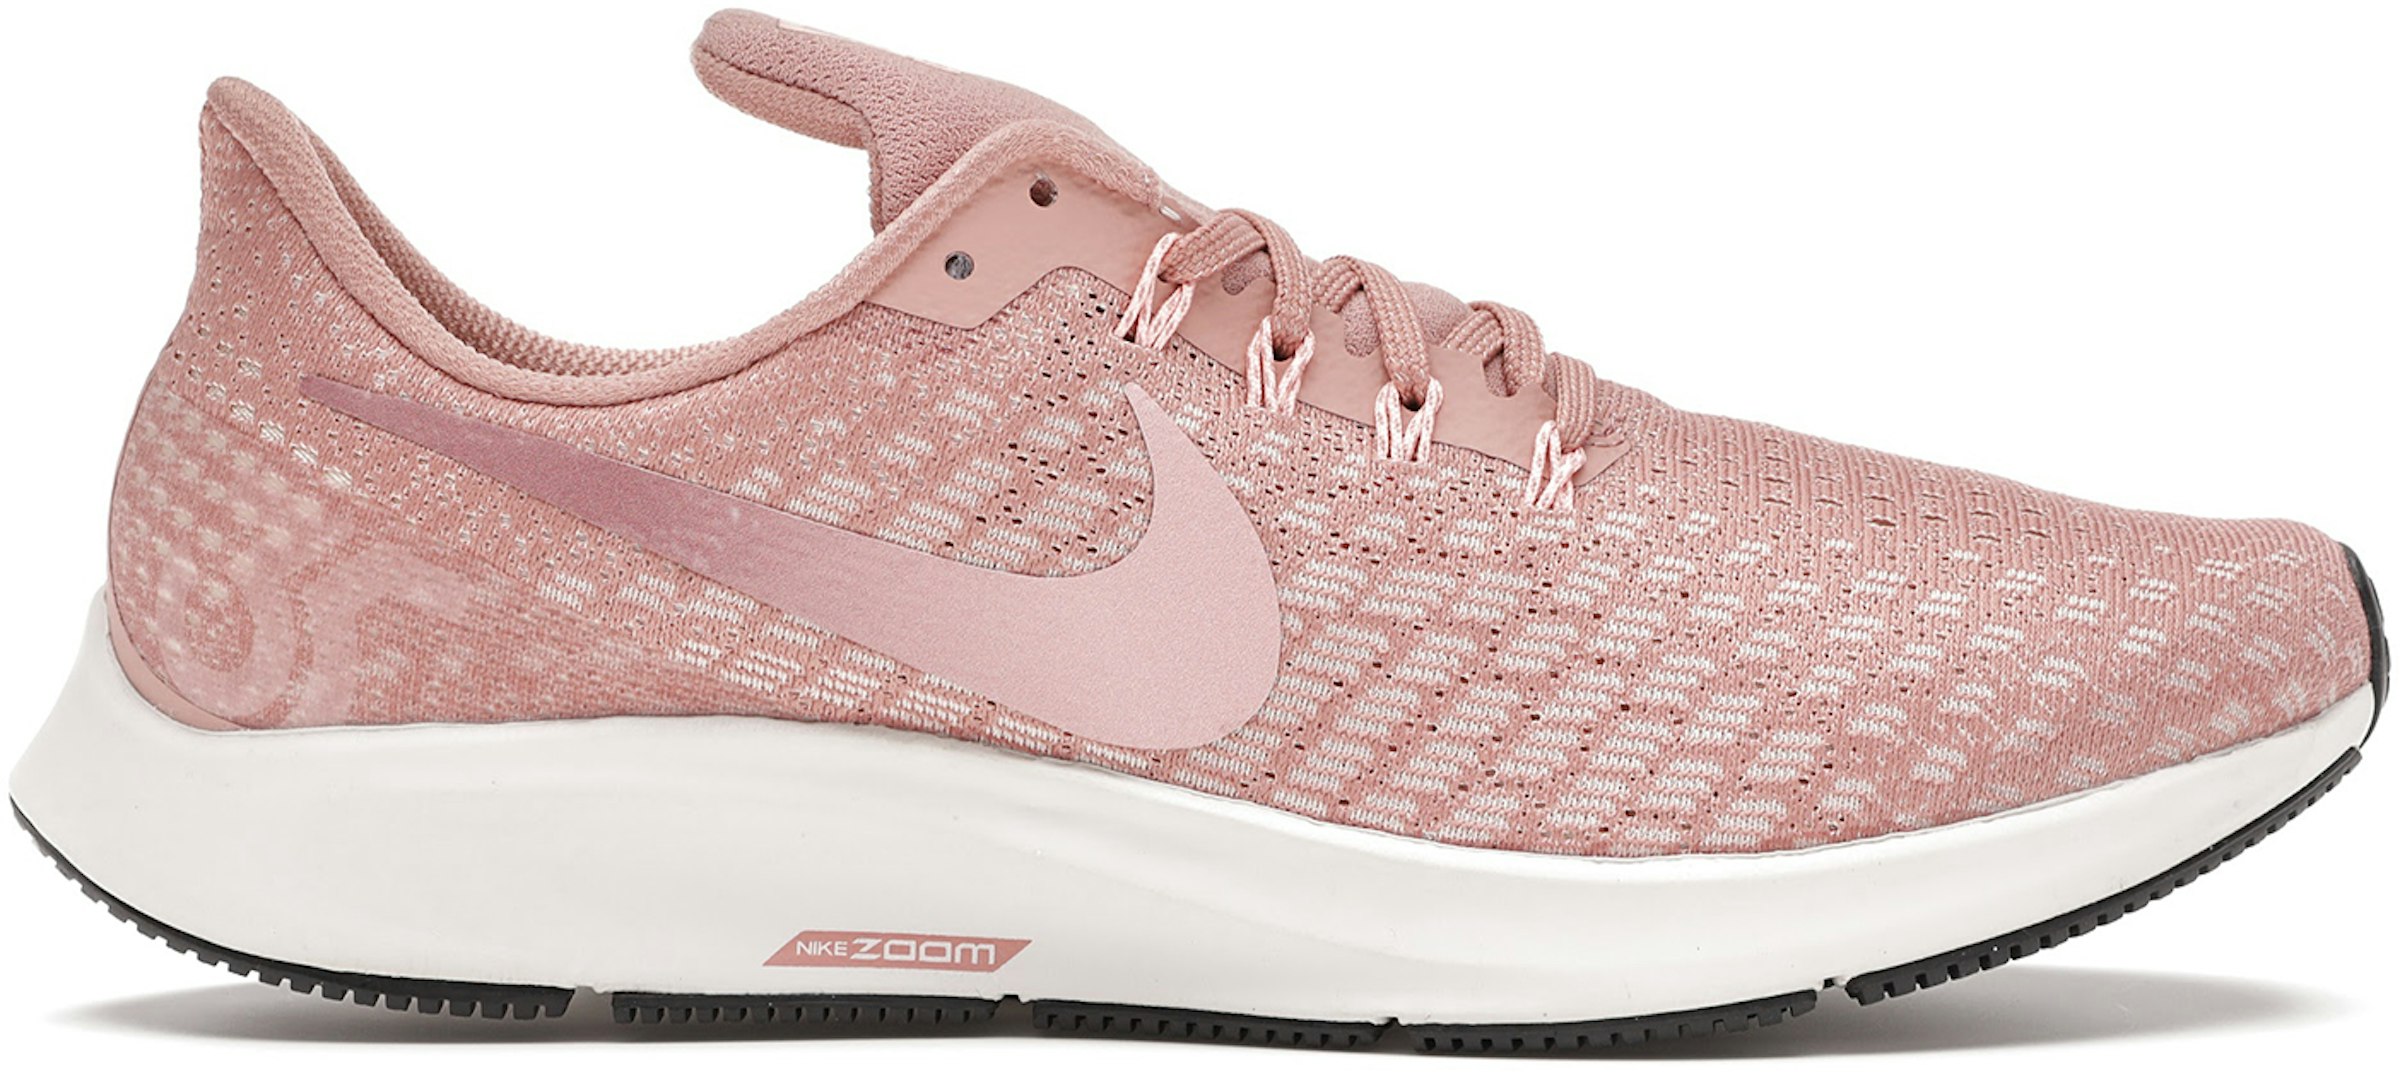 Nike Air Zoom Rust Pink (Women's) - 942855-603 US